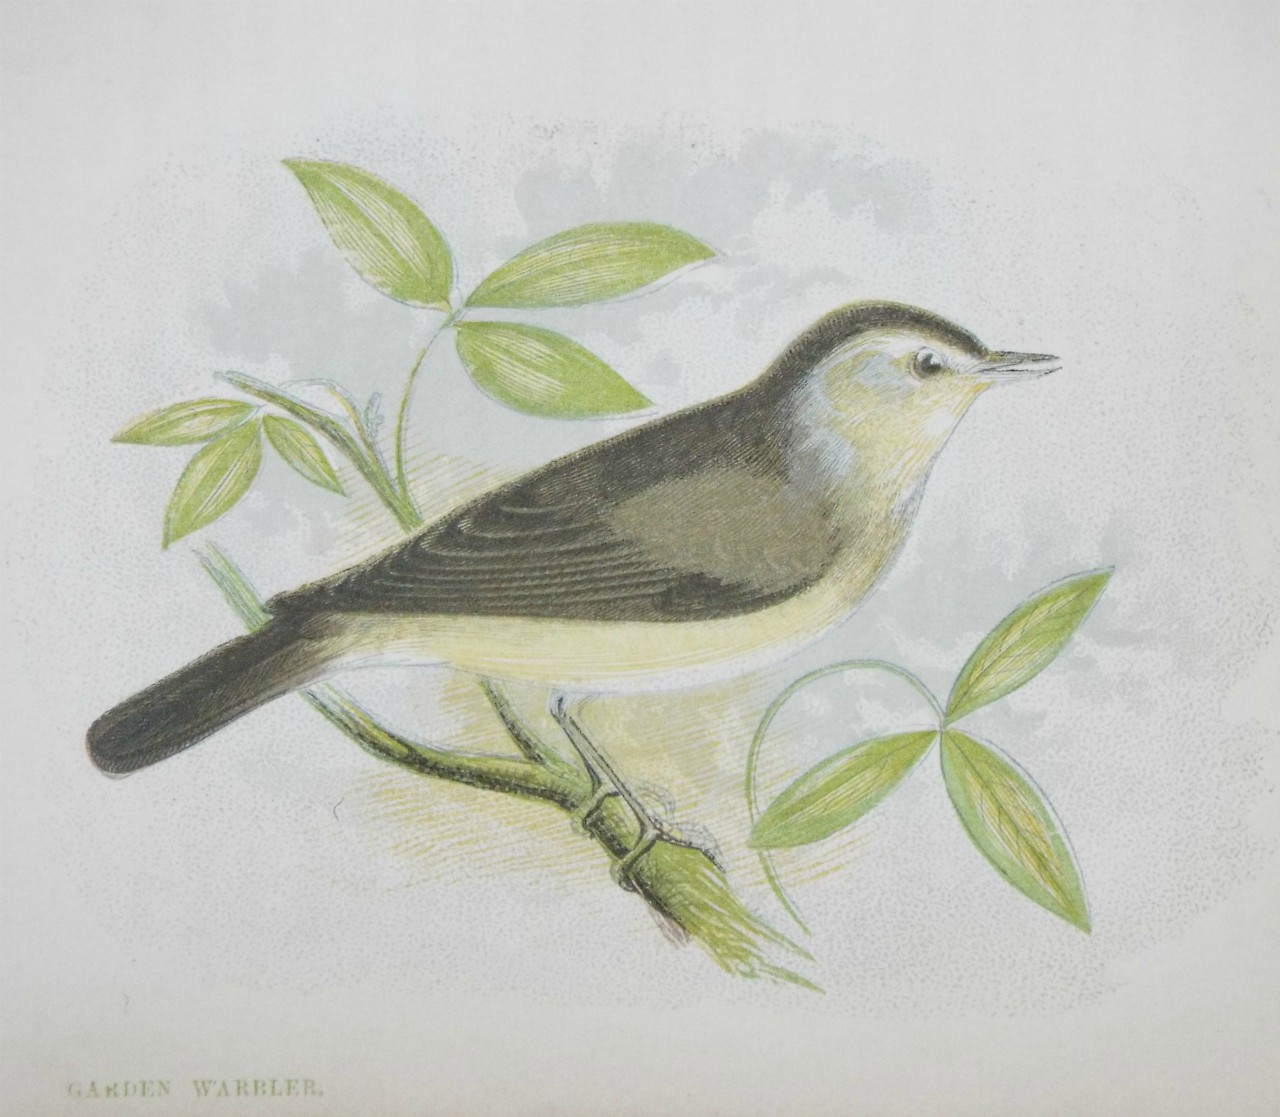 Chromo-lithograph - Garden Warbler.